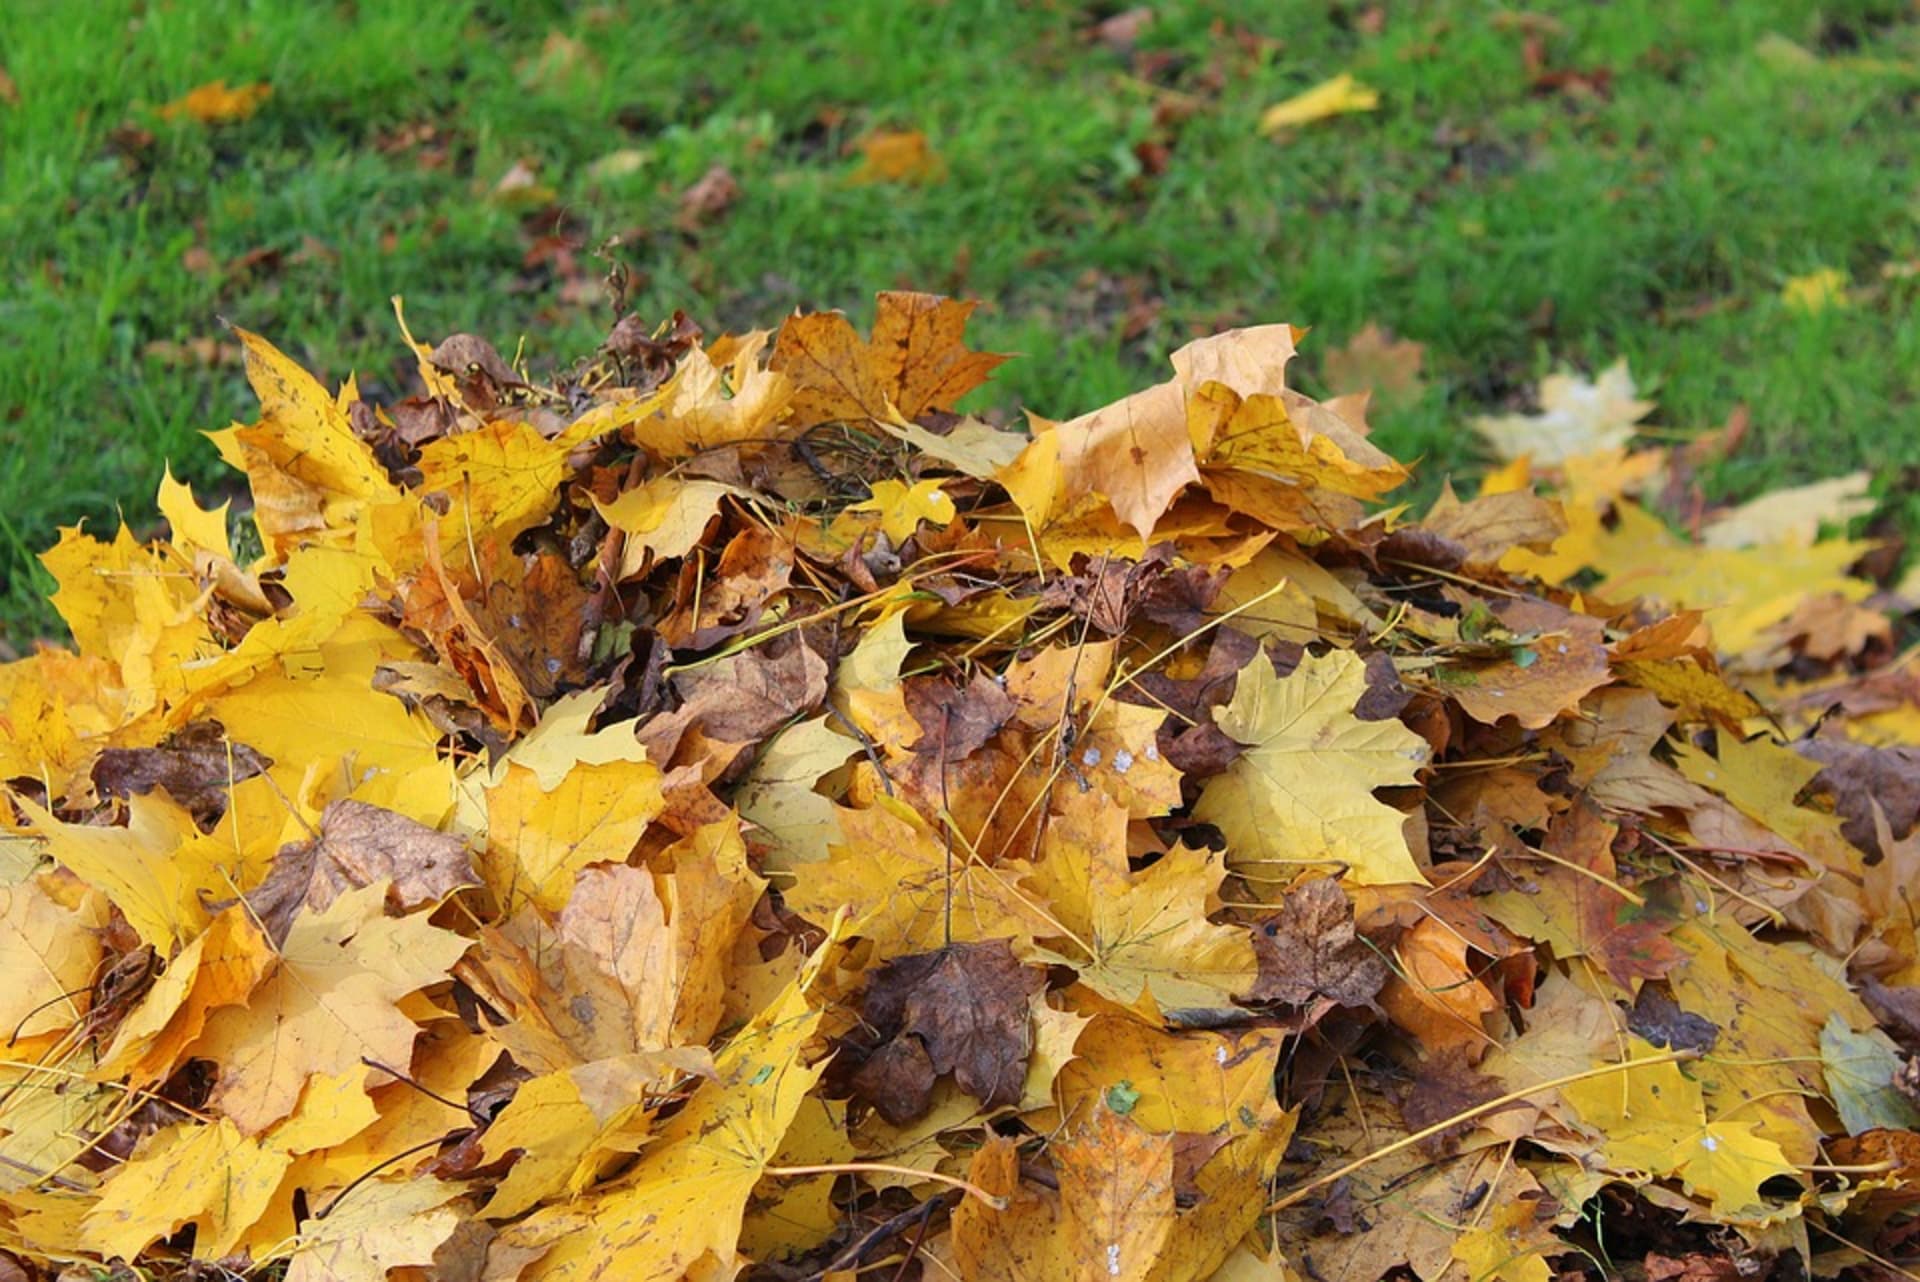 Pokud potřebujete někde listí shrabat, nechte ho na hromadách nebo ho přihrňte ke stromům.